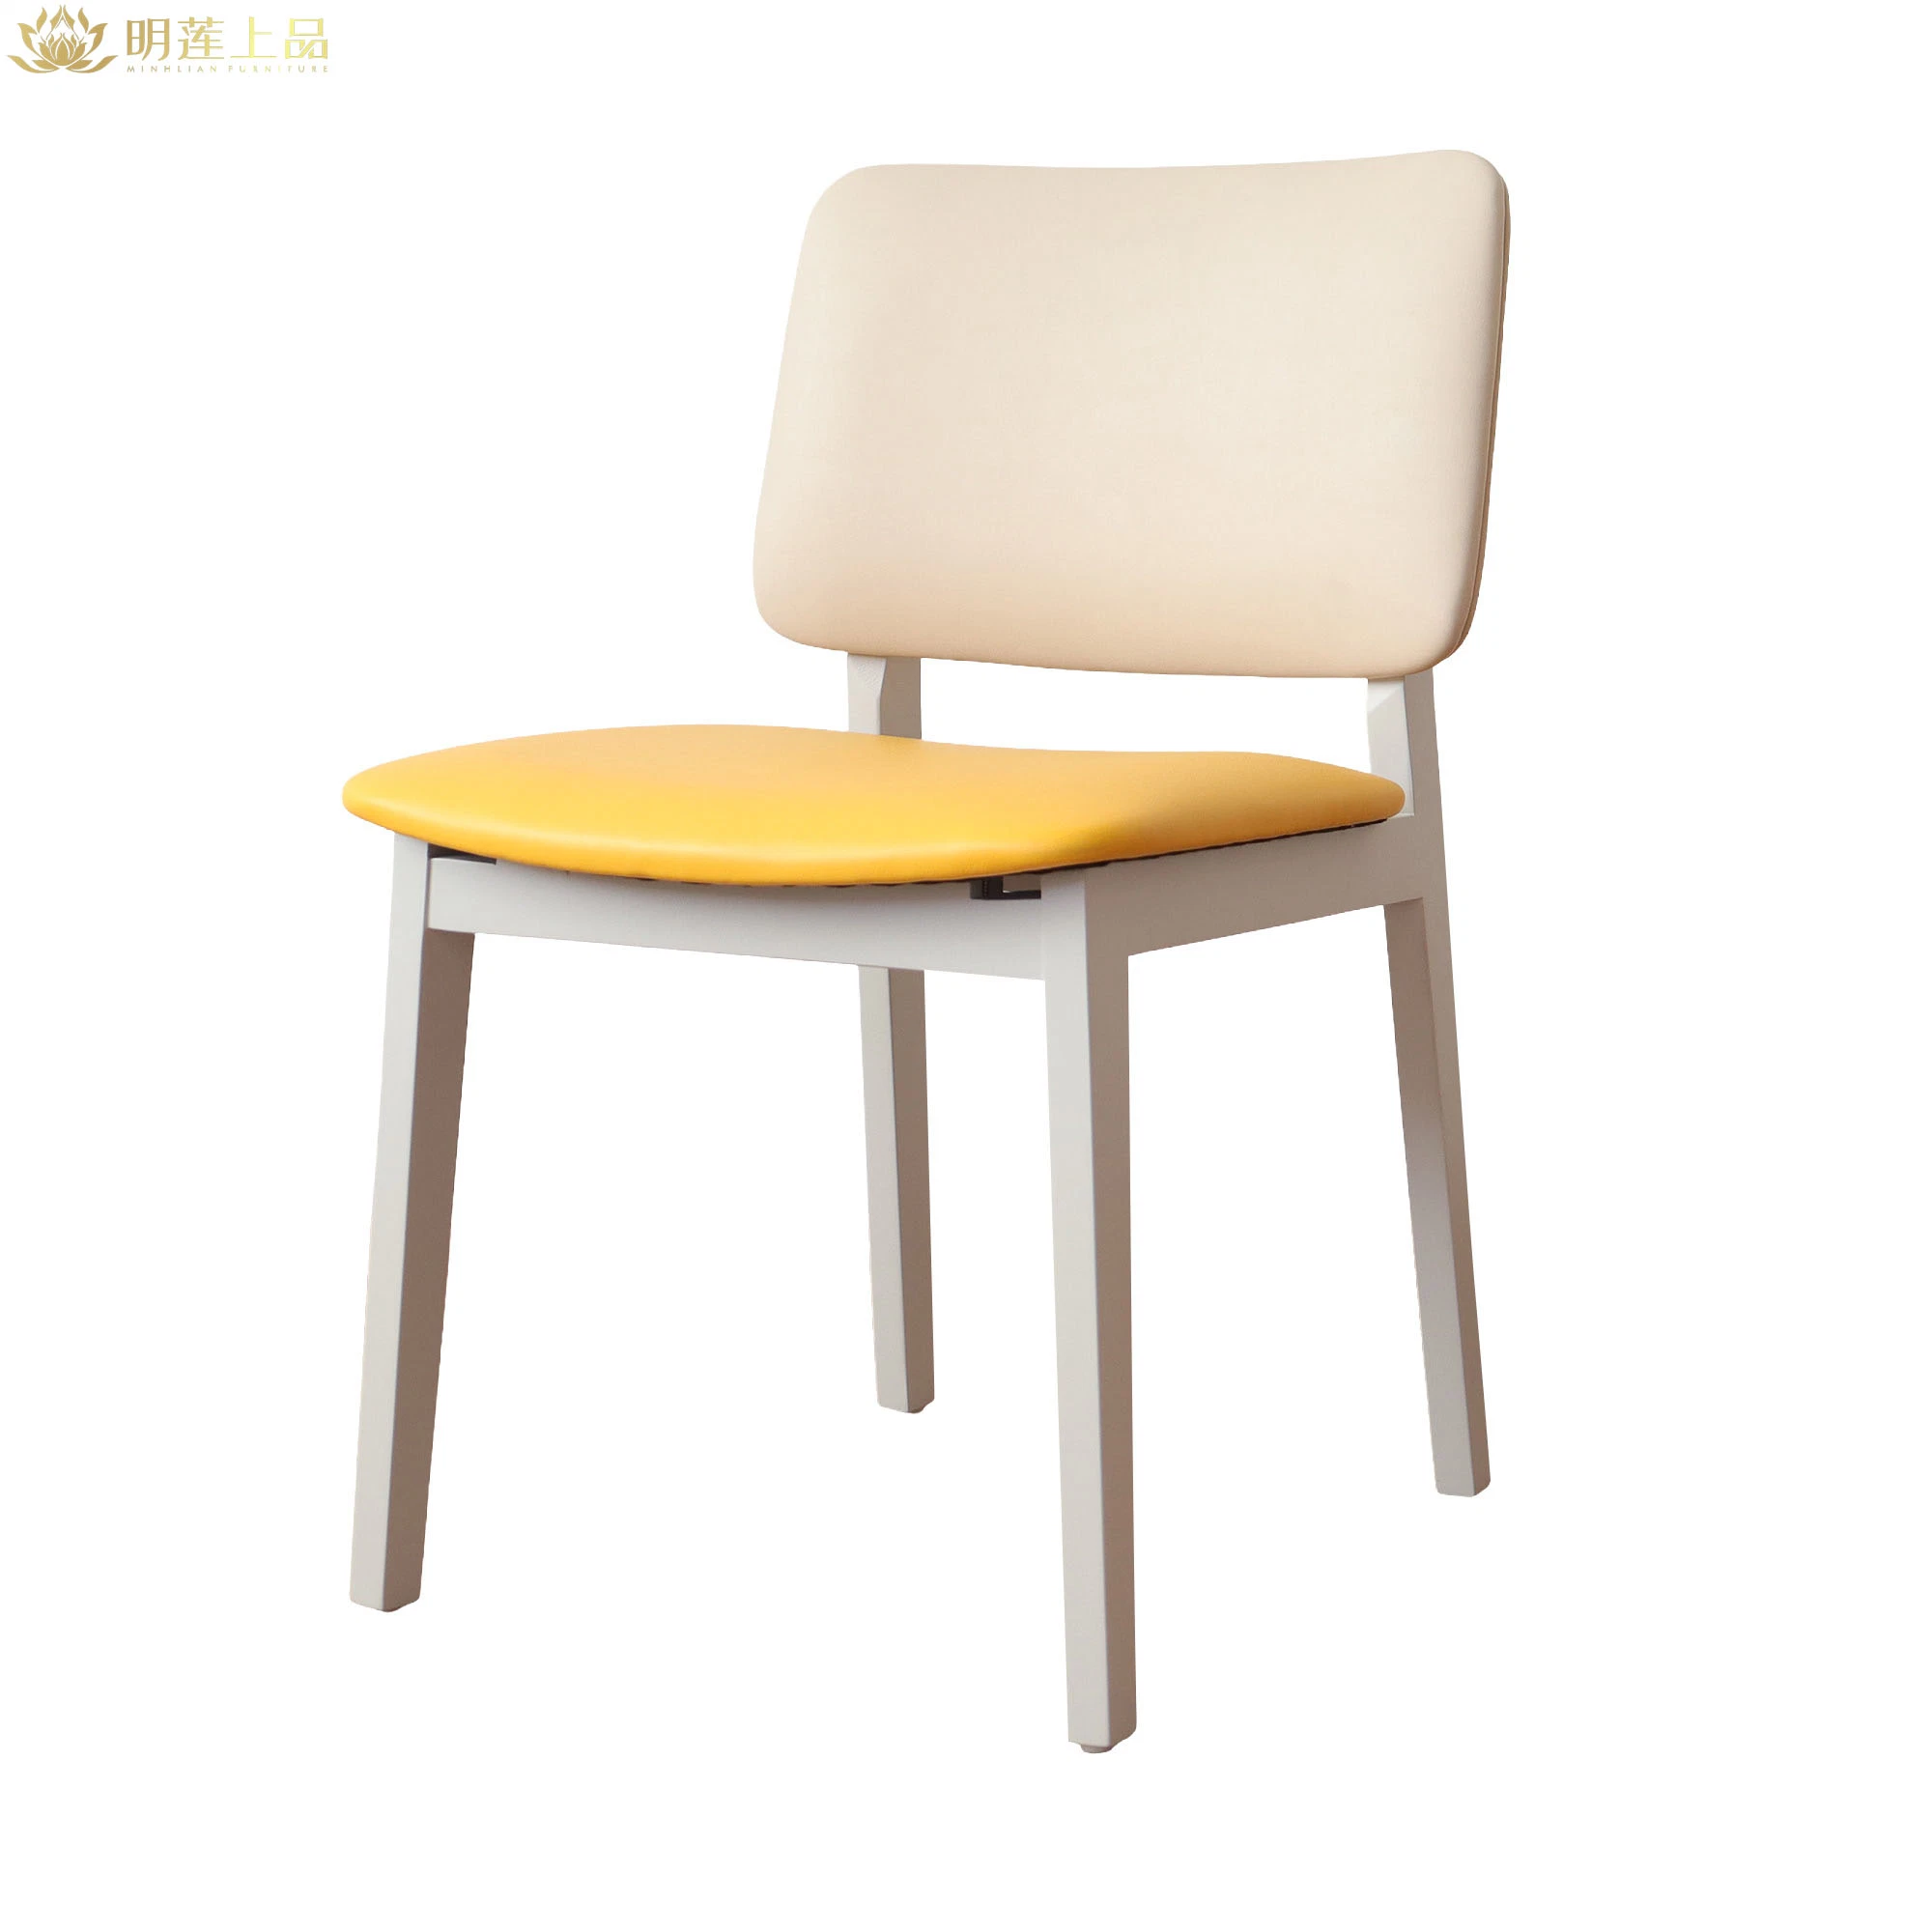 Chaise de restaurant en bois massif au design moderne, en cuir de pu jaune et rembourré Meubles de salle à manger Meubles de restaurant Meubles de maison café chaise en bois